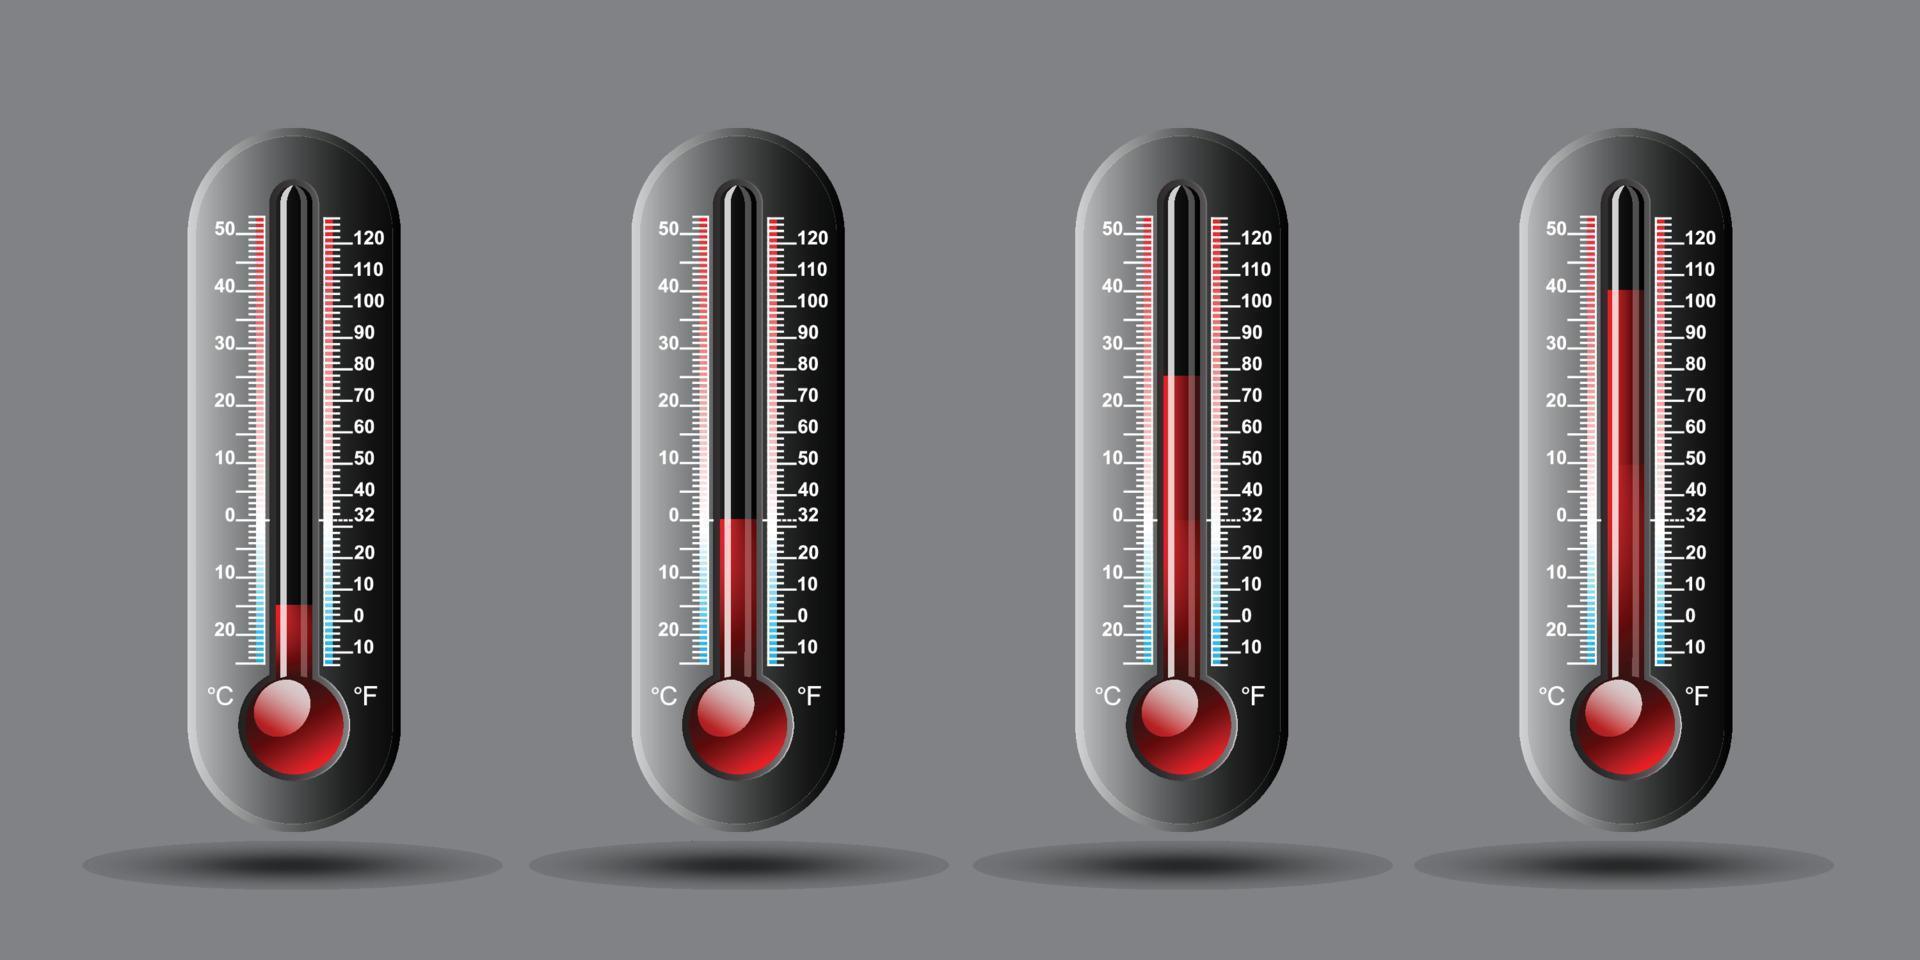 temperatura tempo metereologico termometro impostato con centigrado e fahrenheit scala. vettore illustrazione